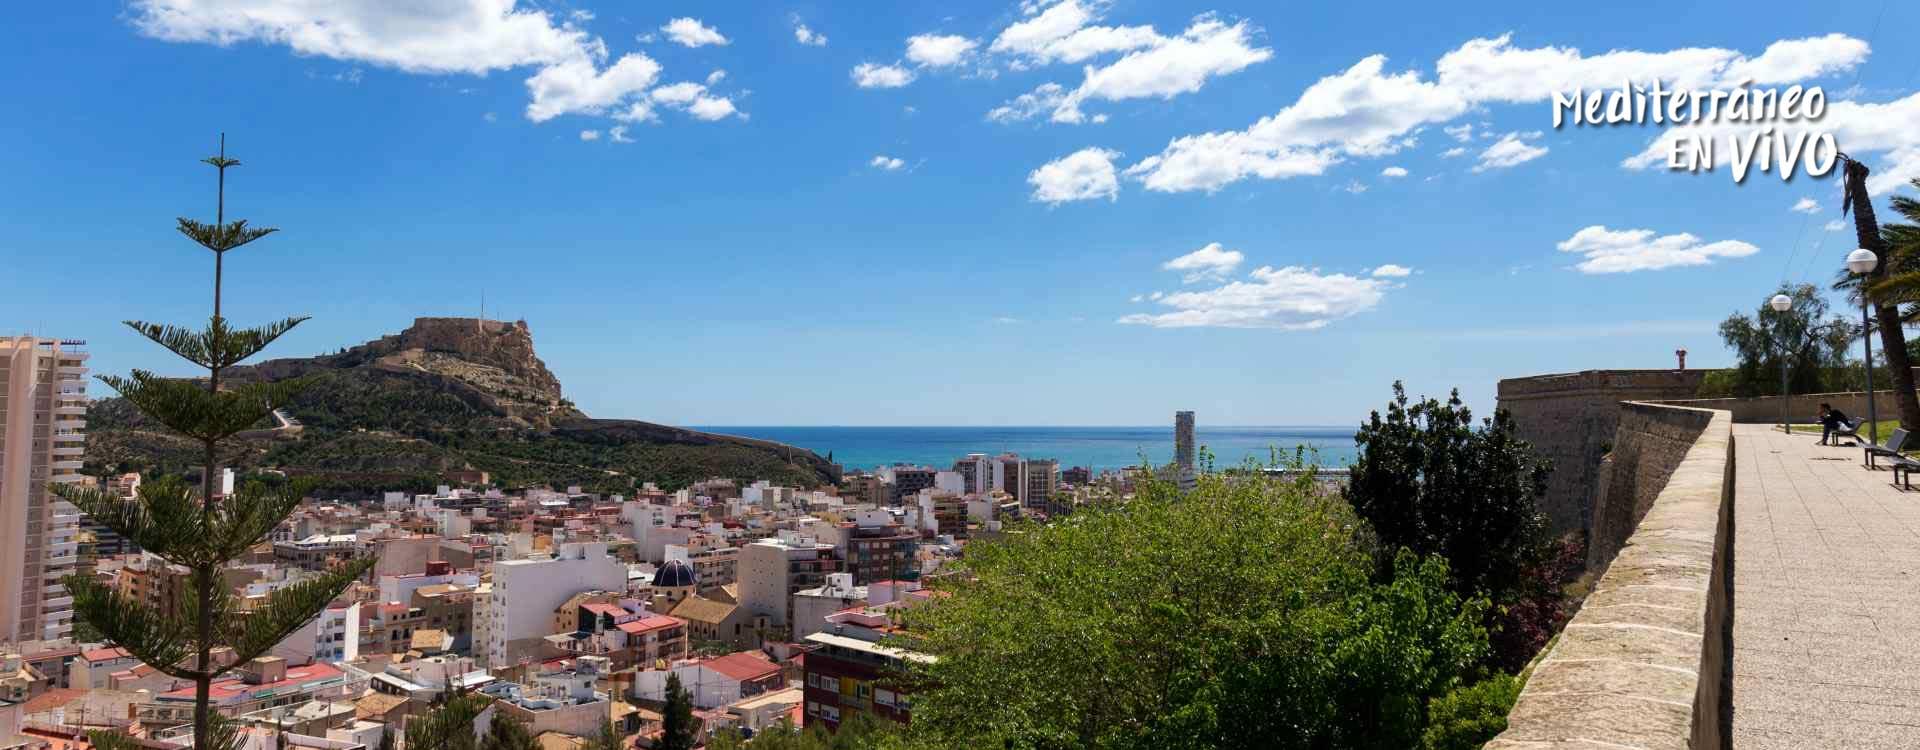 Alicante desde el Castillo de Santa Bárbara - Comunitat Valenciana